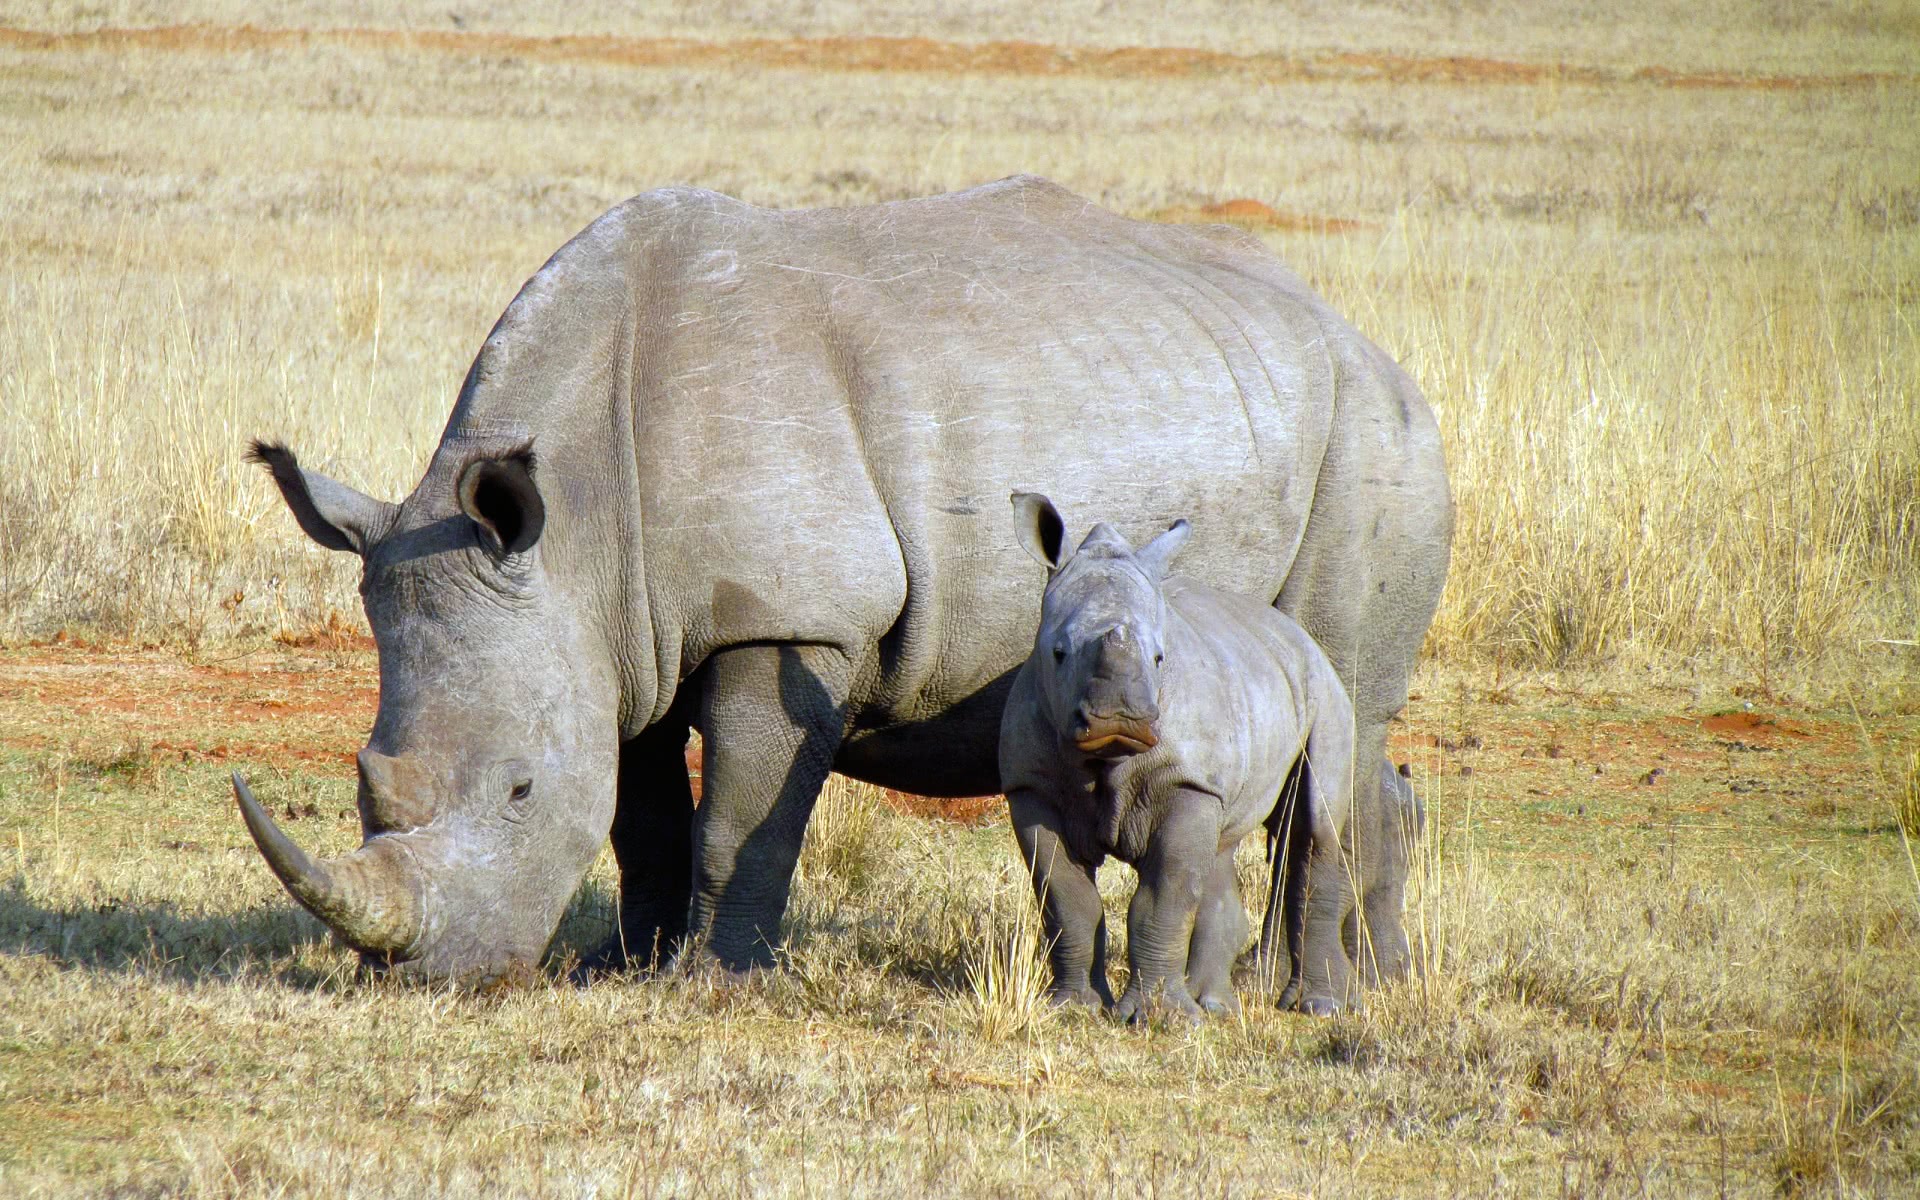 Rhino w cub